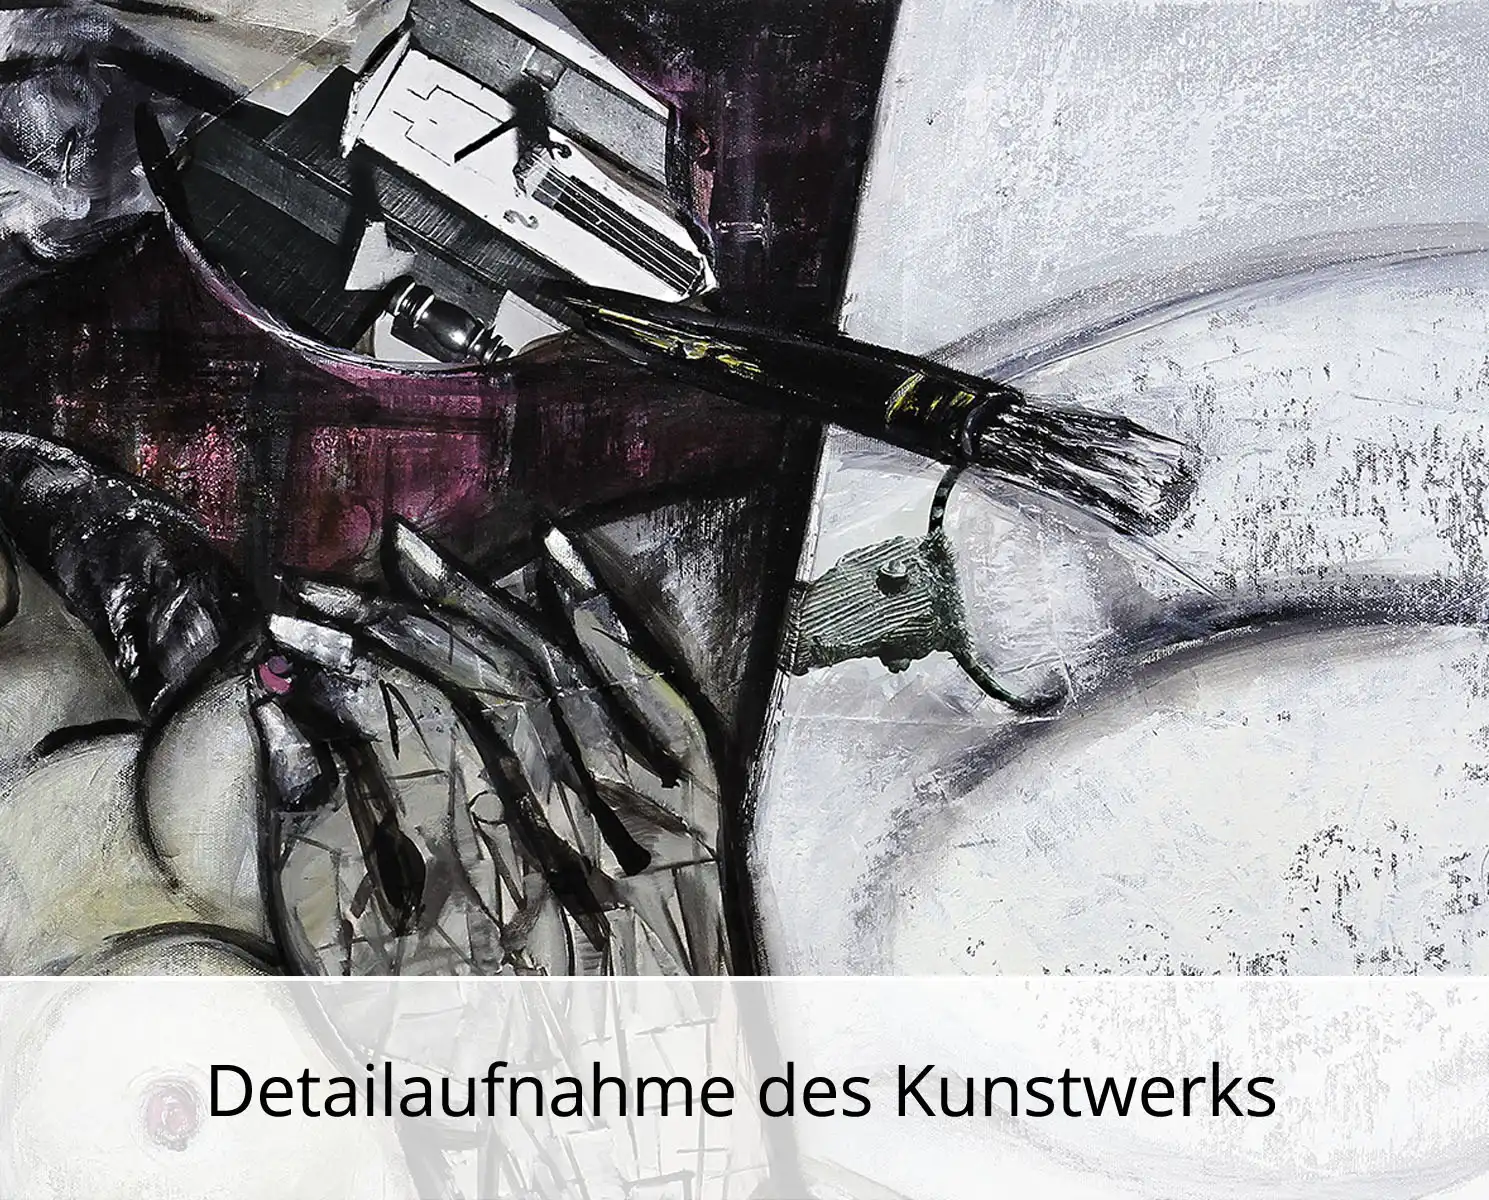 Kunstdruck, signiert: "Künstler im Rausch", K. Namazi, Edition, Nr. 1/100